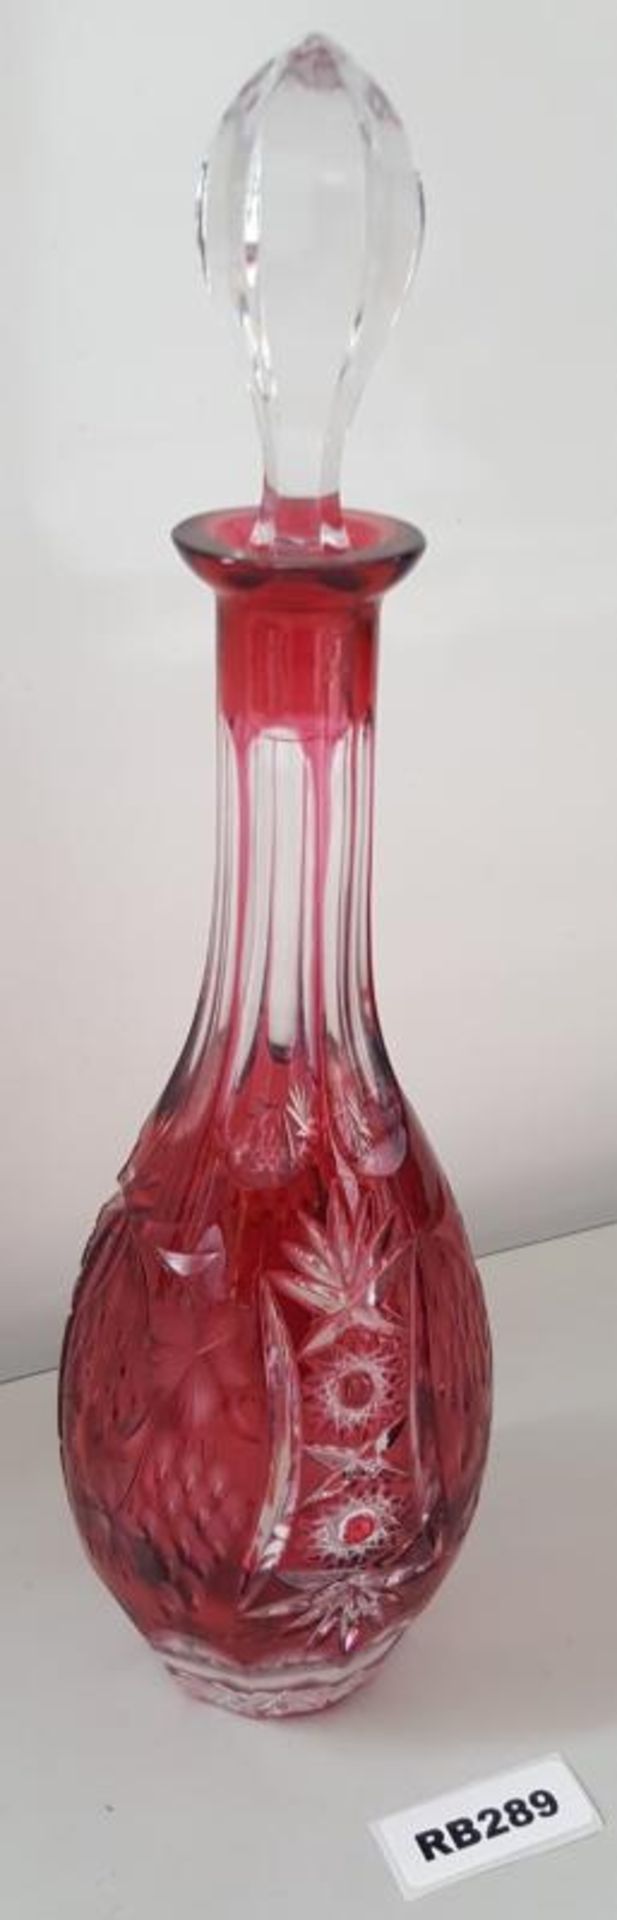 1 x Bohemian Antique Cranberry Cut Glass Decanter H39cm - Ref RB289 E - CL334 - Location: Altrincham - Image 2 of 4